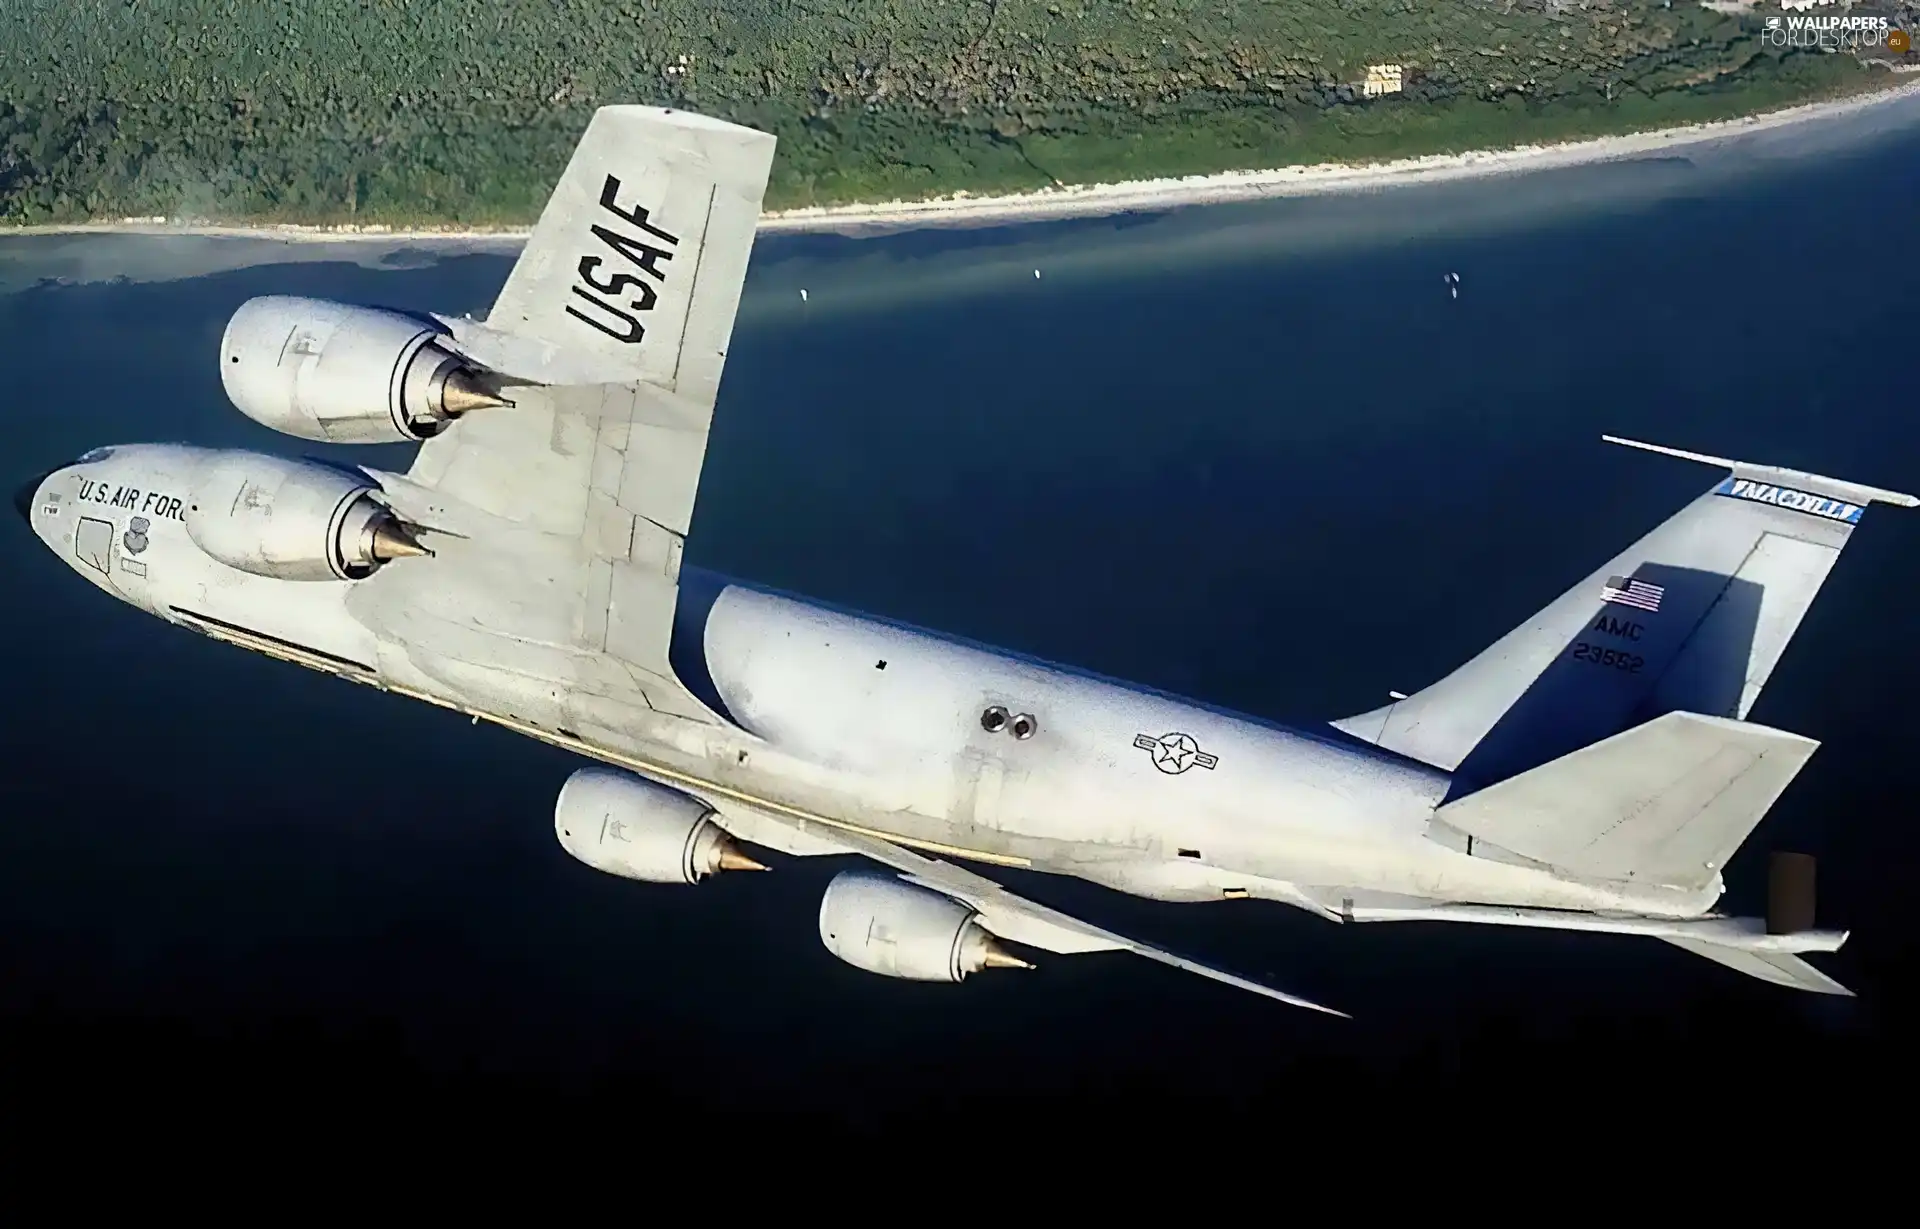 wings, Boeing KC-135R, return